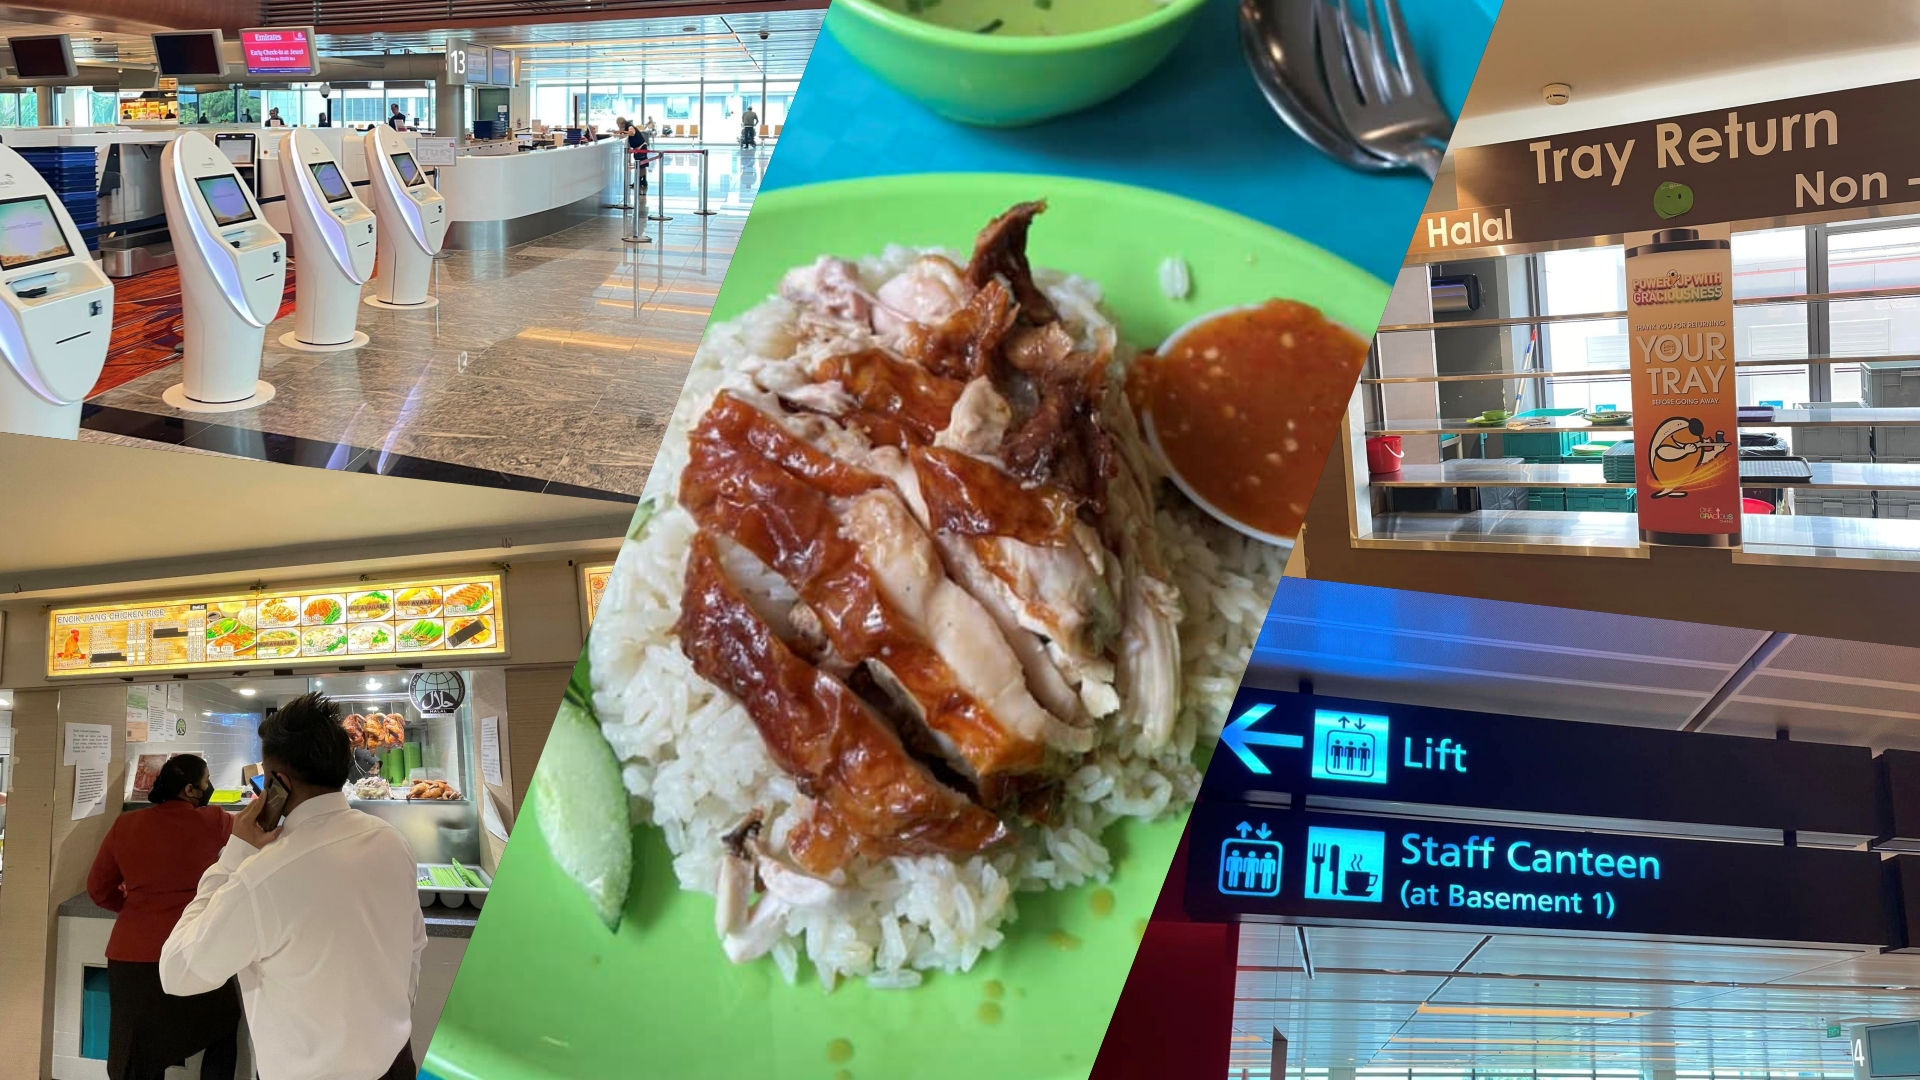 Anda di Changi Airport? Ini port staf yang ada makanan murah